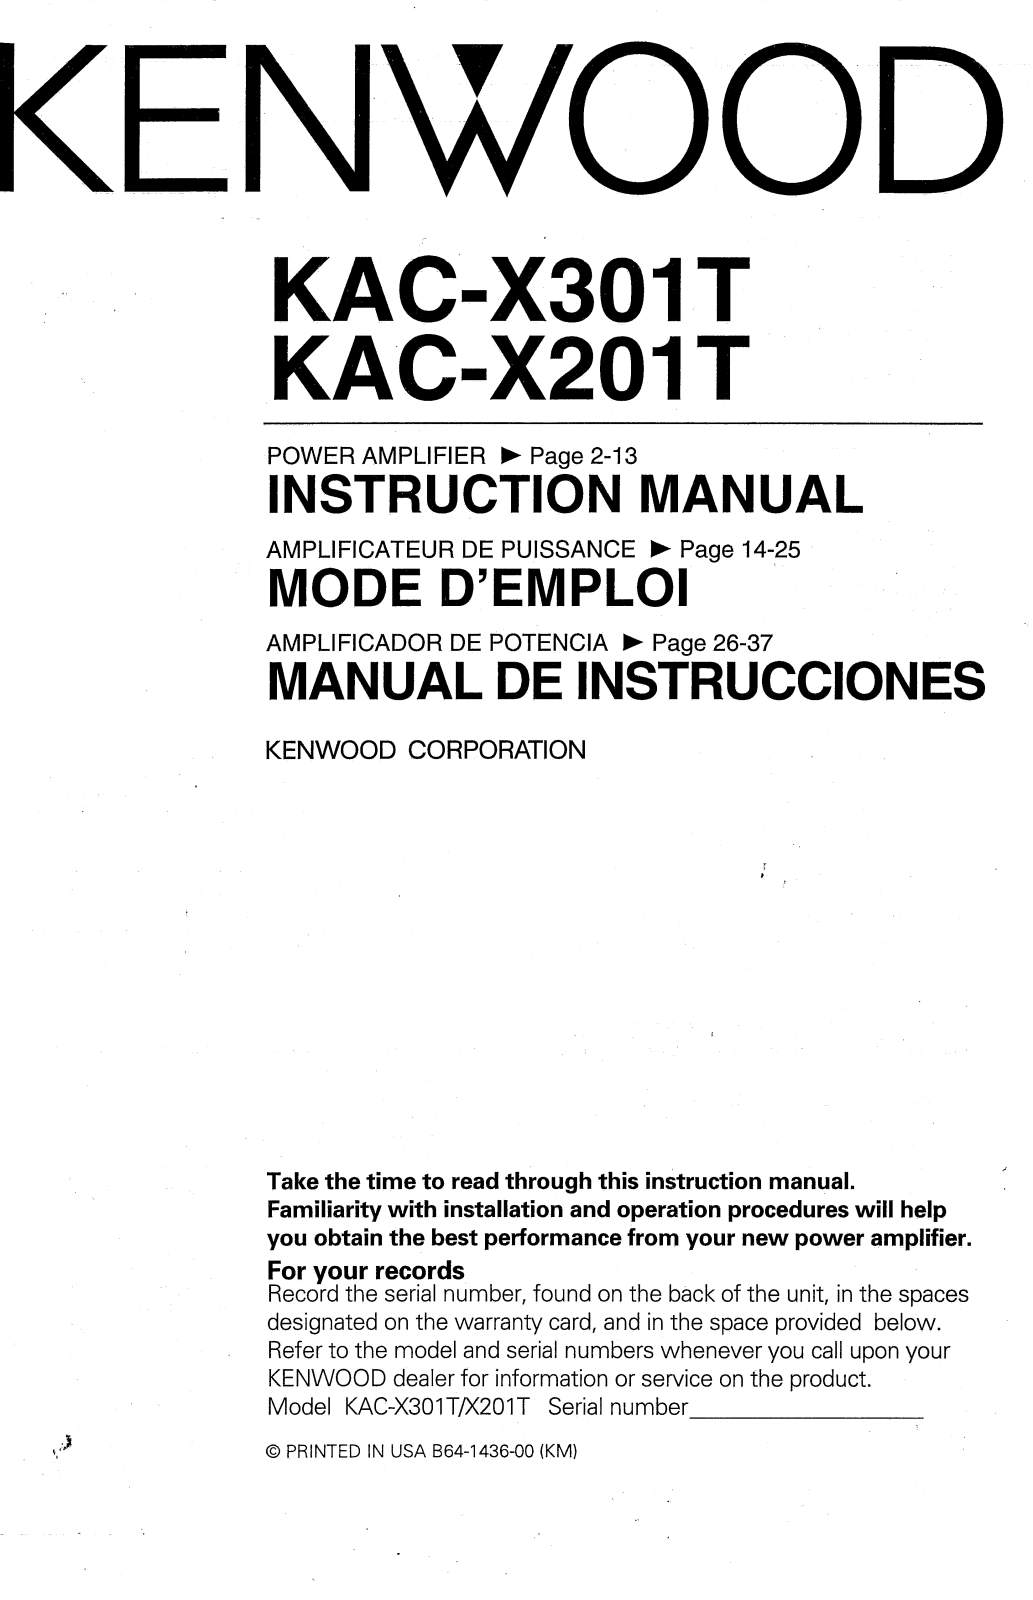 Kenwood KAC-X301T, KAC-X201T Owner's Manual